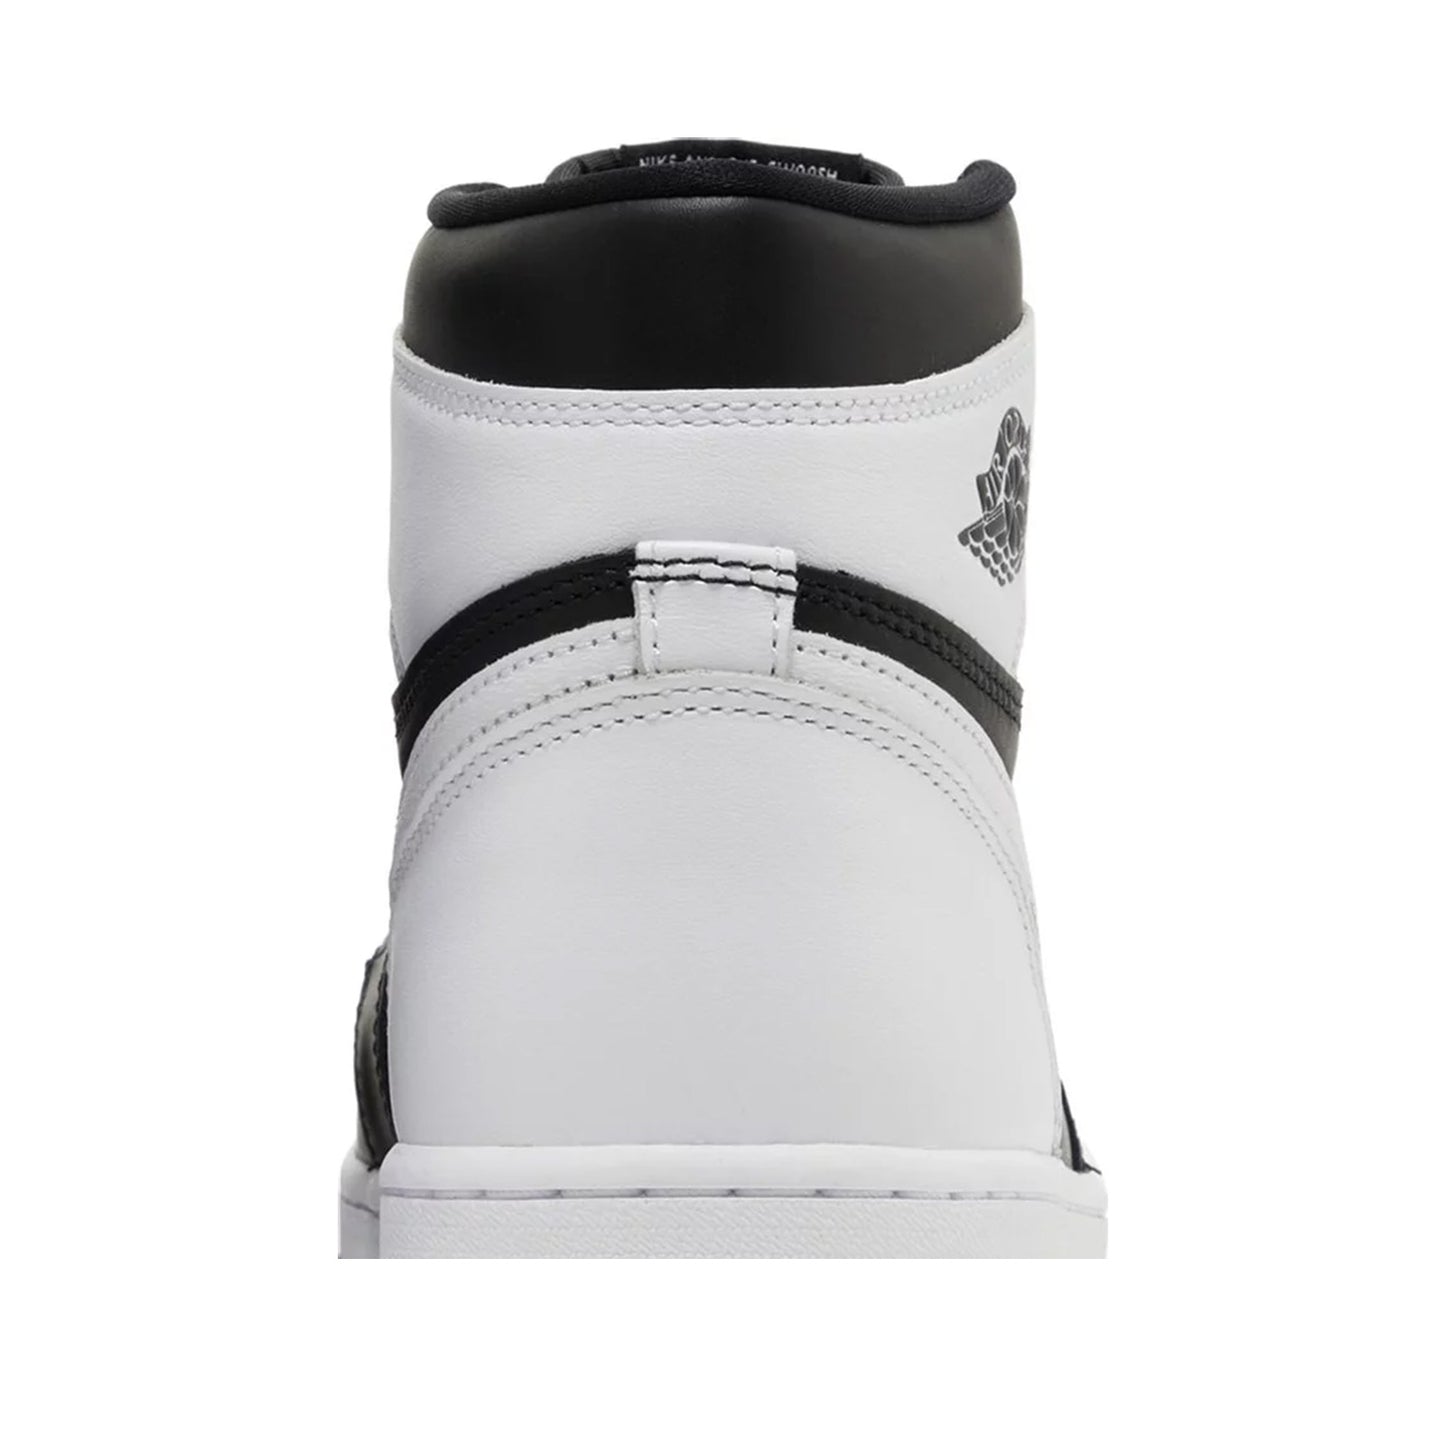 Air Jordan 1 High, Retro OG Black White 2.0